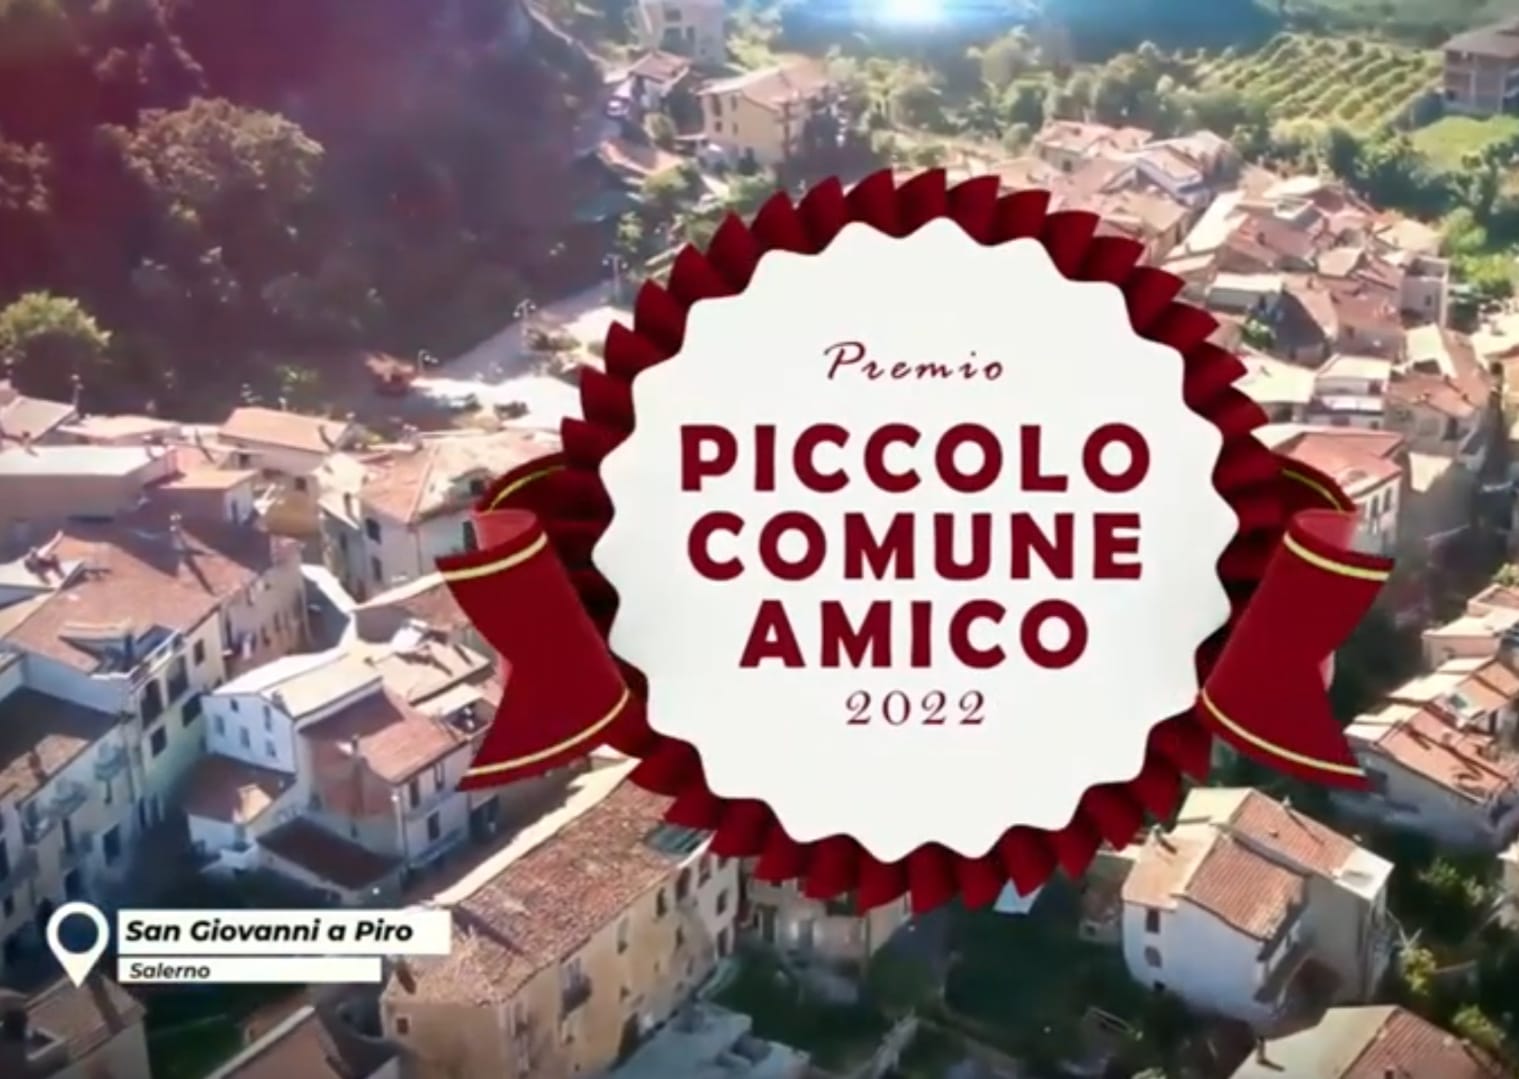  San Giovanni a Piro: premio “Piccolo Comune Amico” I classificato nella sezione Cultura, Arte, Storia 